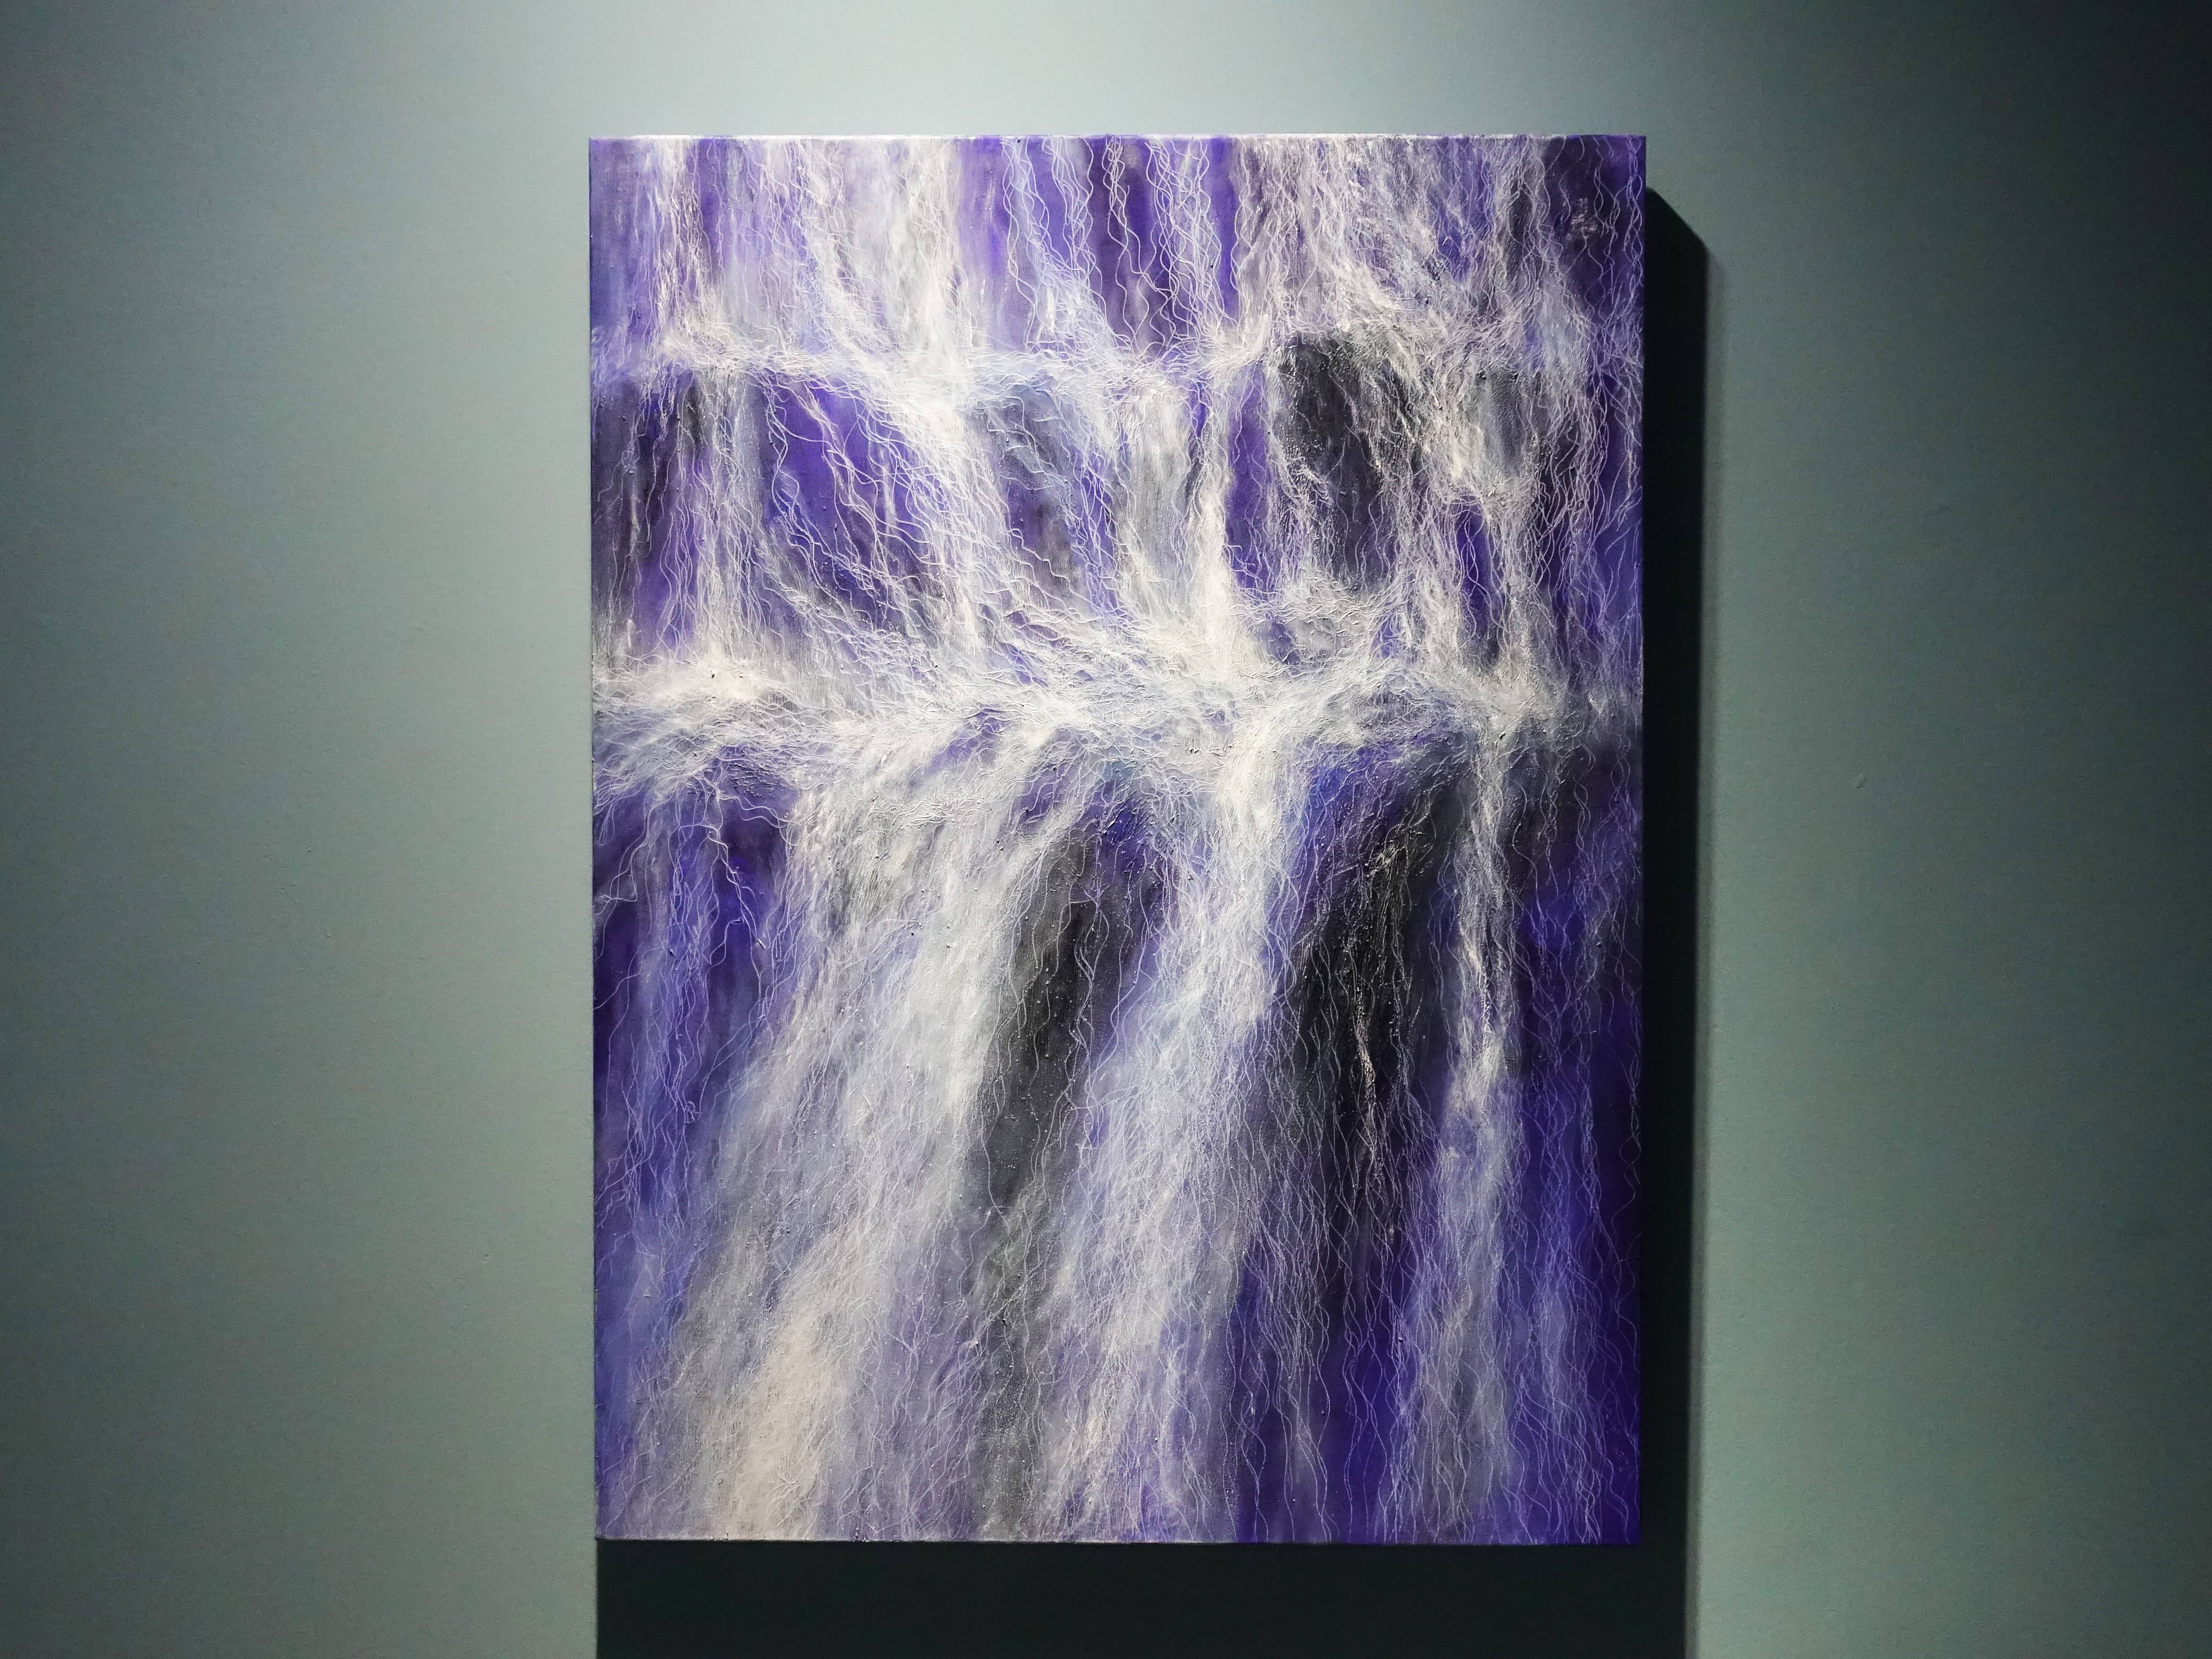 鄭麗雲，《瀑布VII》，130 x 97 cm，油彩、蔴布，2018。